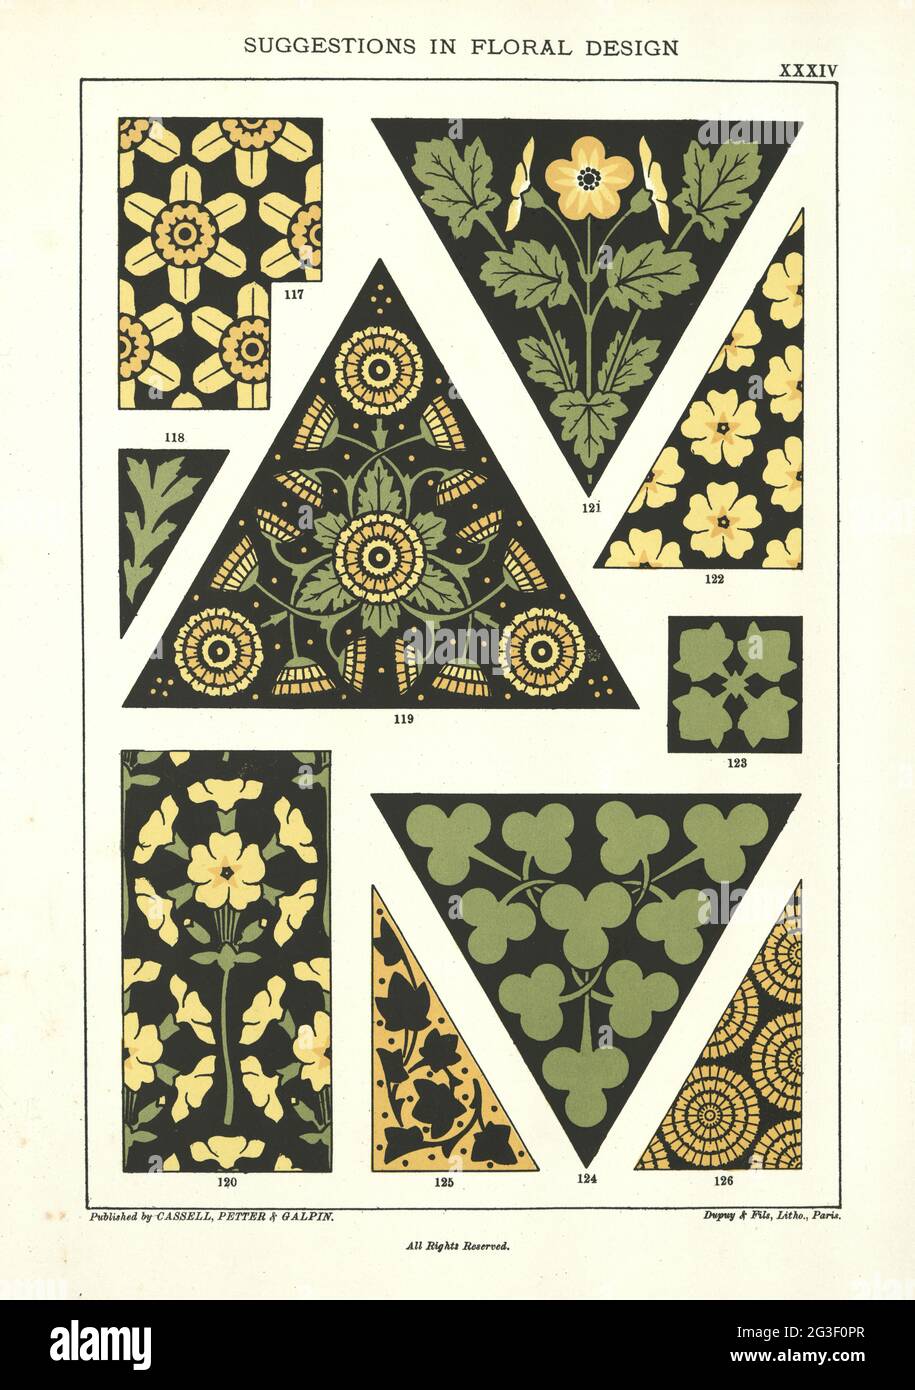 Vorschläge in floralem Design, viktorianische dekorative Kunst 19. Jahrhundert Stockfoto